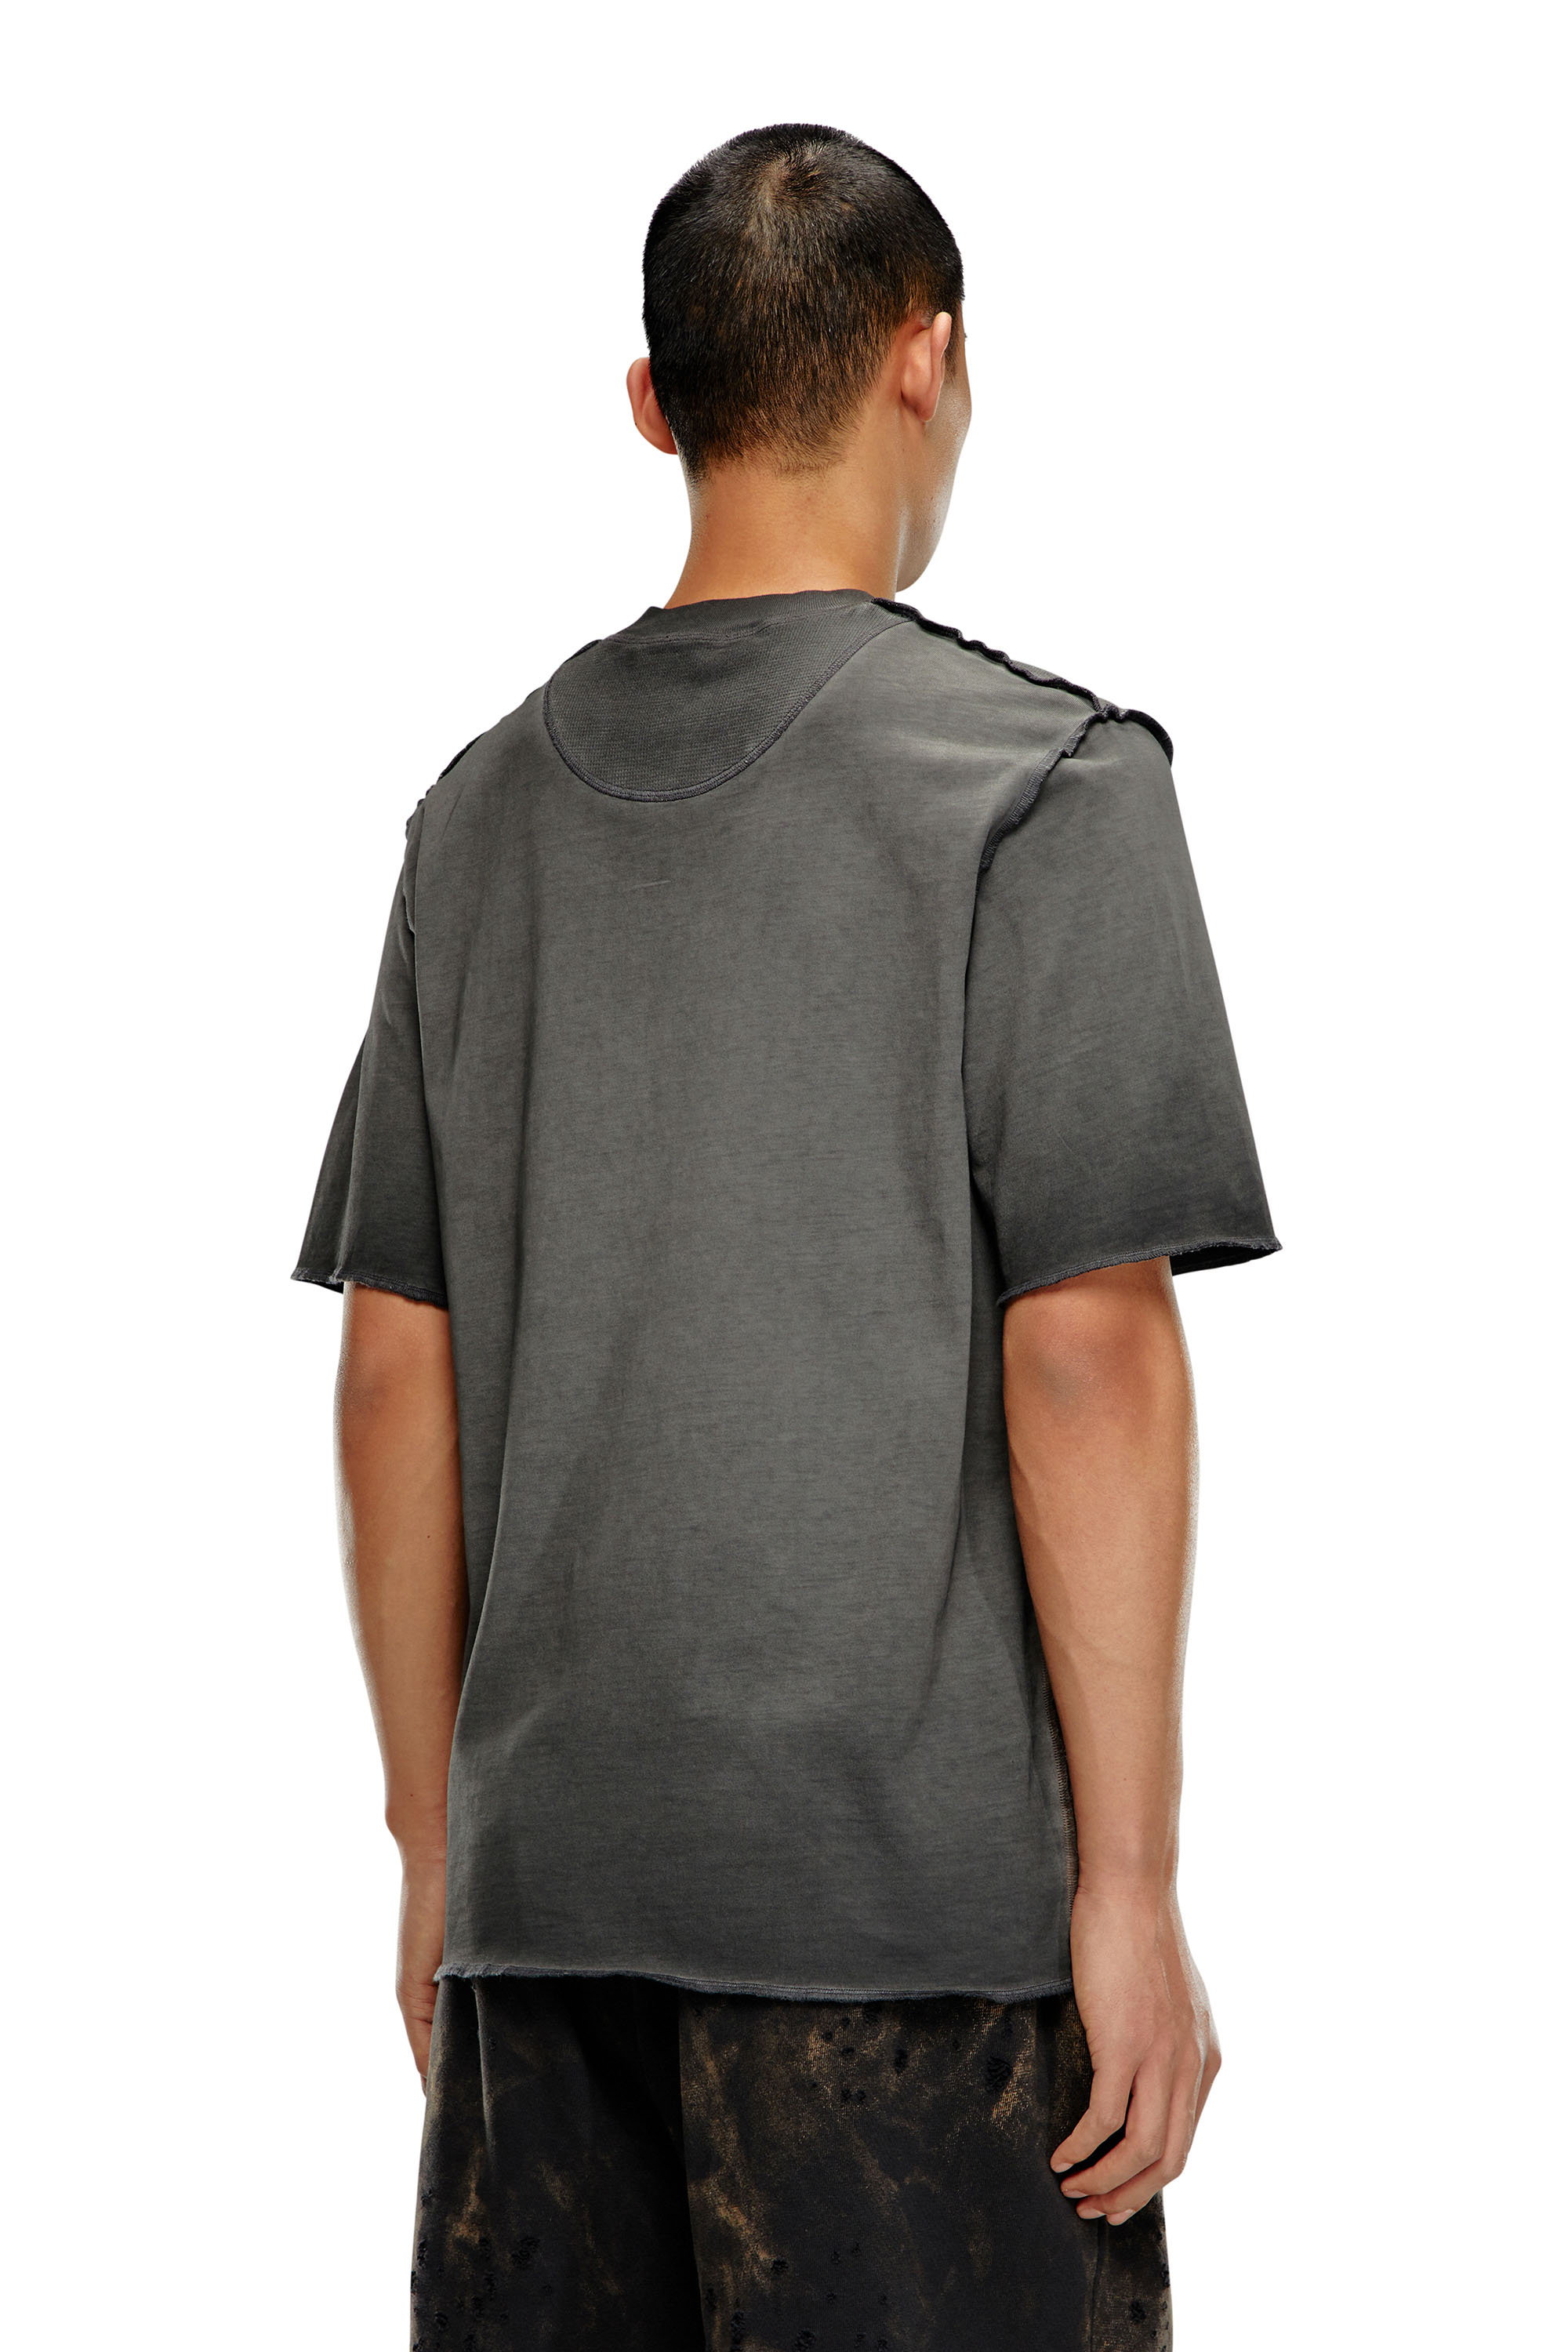 Diesel - T-ERIE-N, Herren T-Shirt mit Schultern mit Mikro-Waffel-Muster in Grau - Image 4